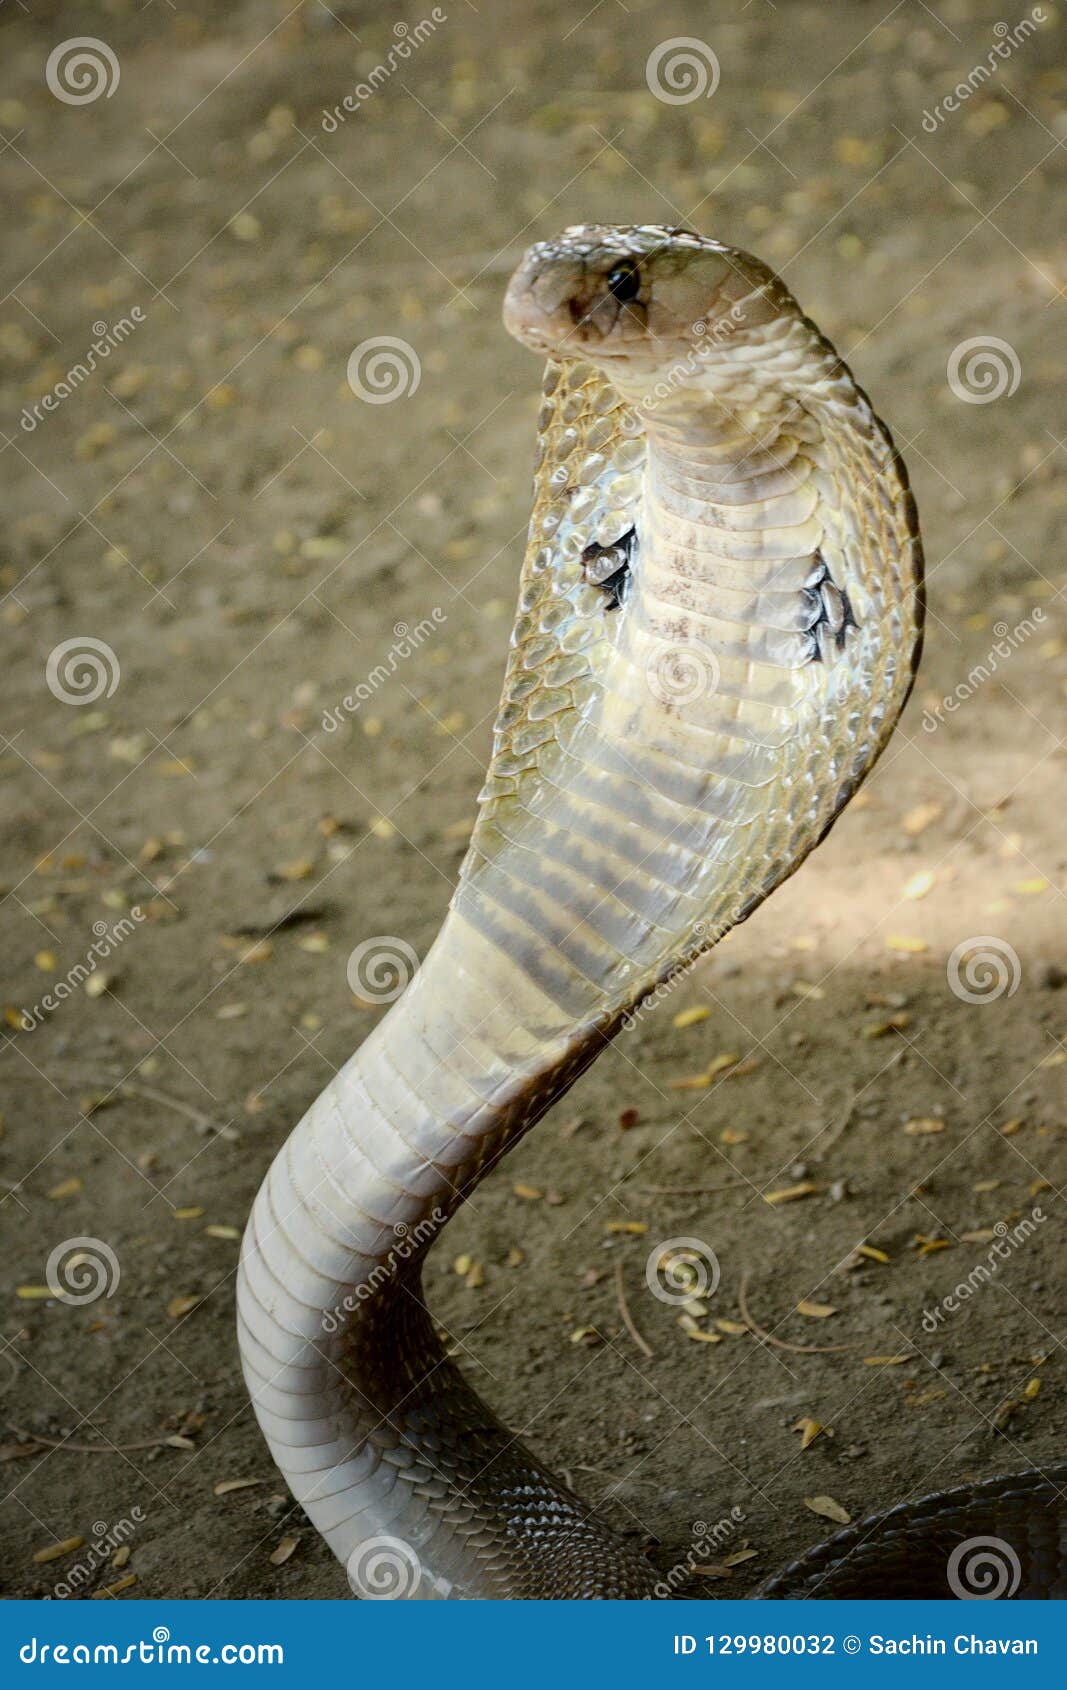 Snake wallpaper  Snake wallpaper King cobra snake Wallpaper